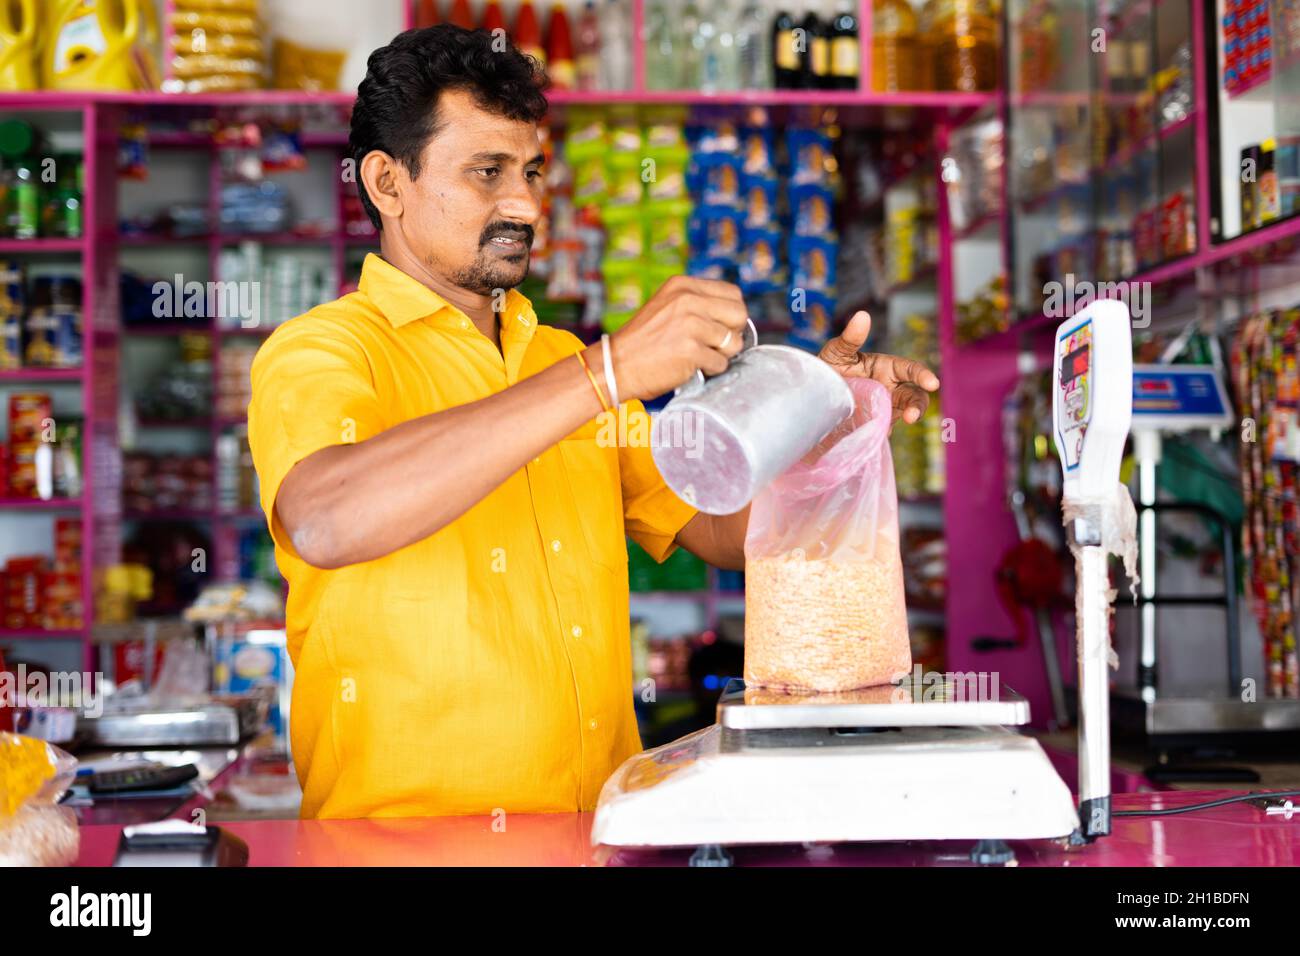 Kirana oder Lebensmittelhändler beschäftigt Messung Gewicht der Taubenerde auf Waage, bevor sie an den Kunden - Konzept der Kleinbetrieb und Beruf Stockfoto